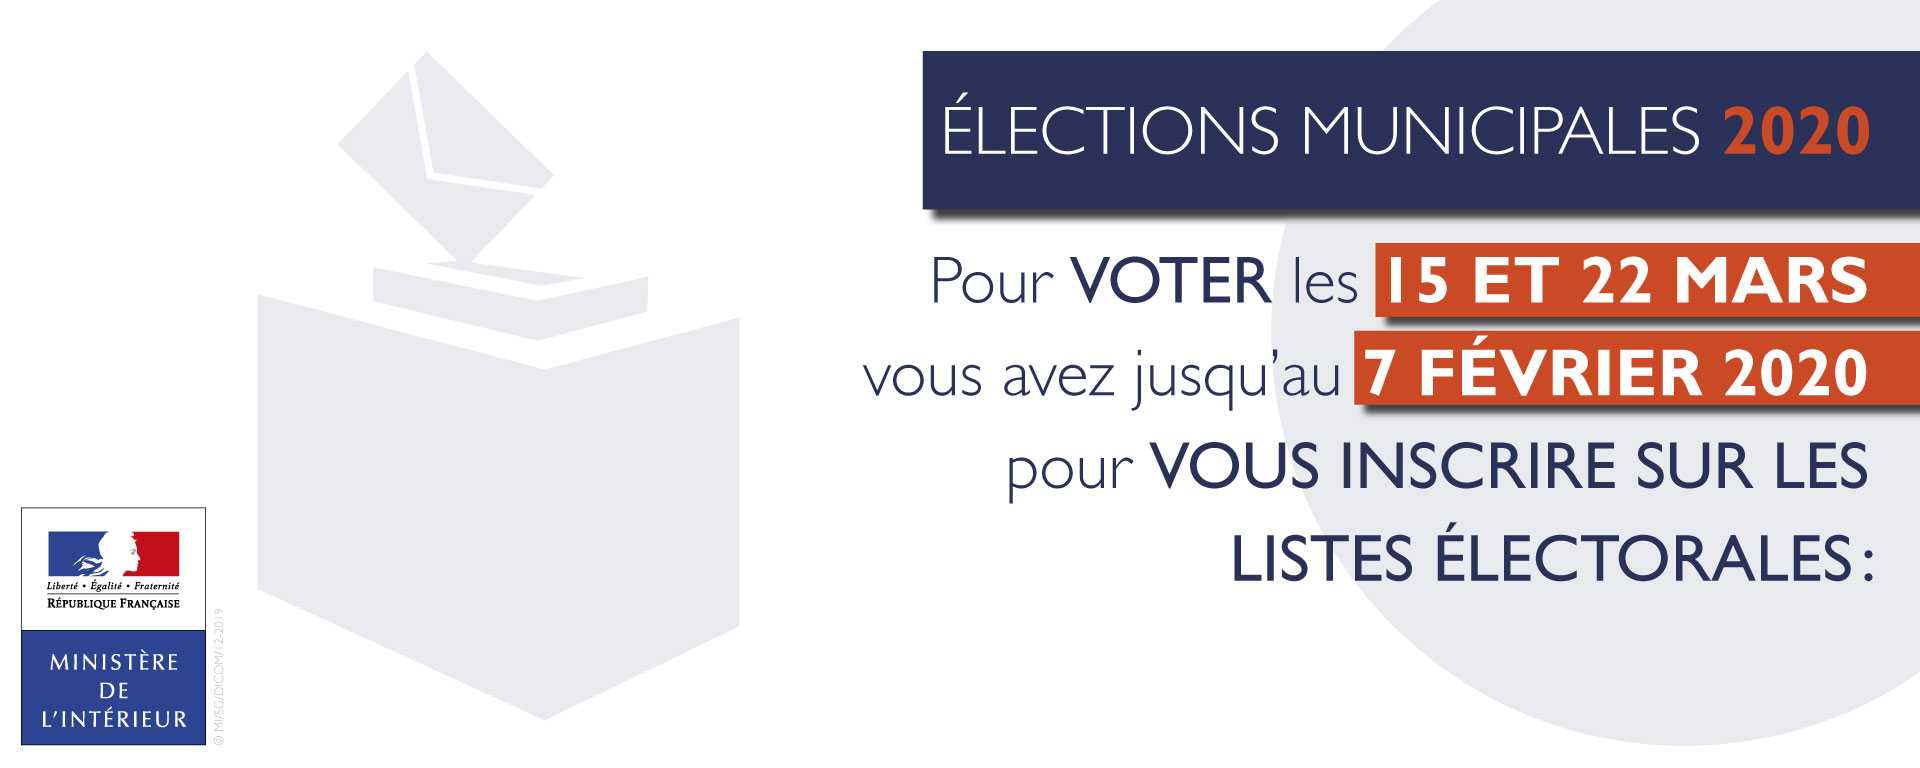 Pour voter les 15 et 22 mars, vous avez jusqu'au 7 février 2020 pour vous inscrire sur les listes électorales.